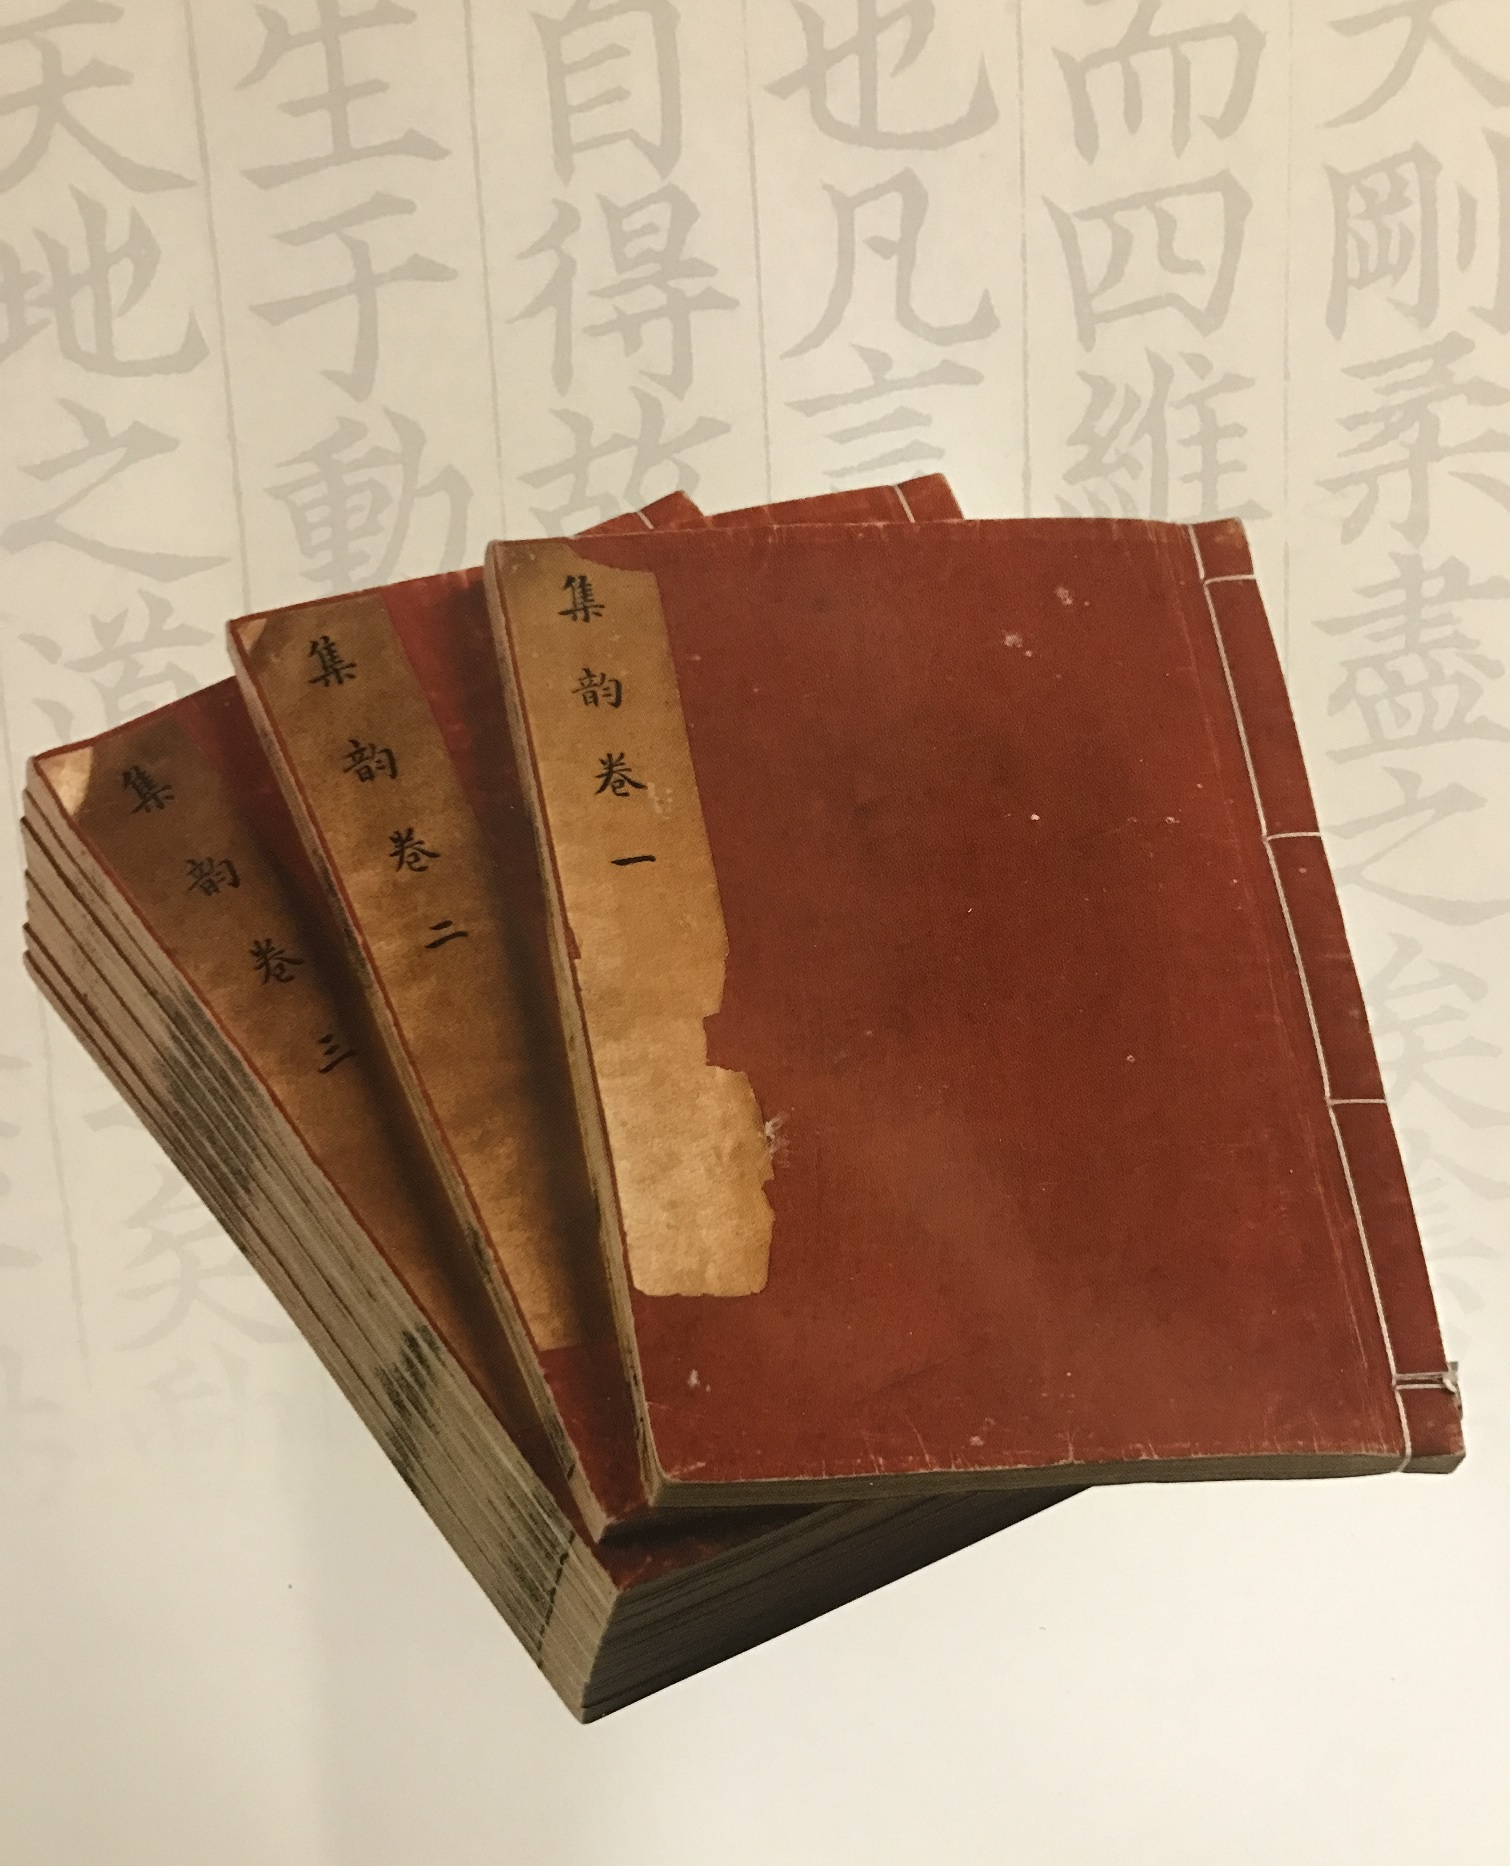 述古堂影宋钞本《集韵》。图片由上海图书馆提供。.jpg